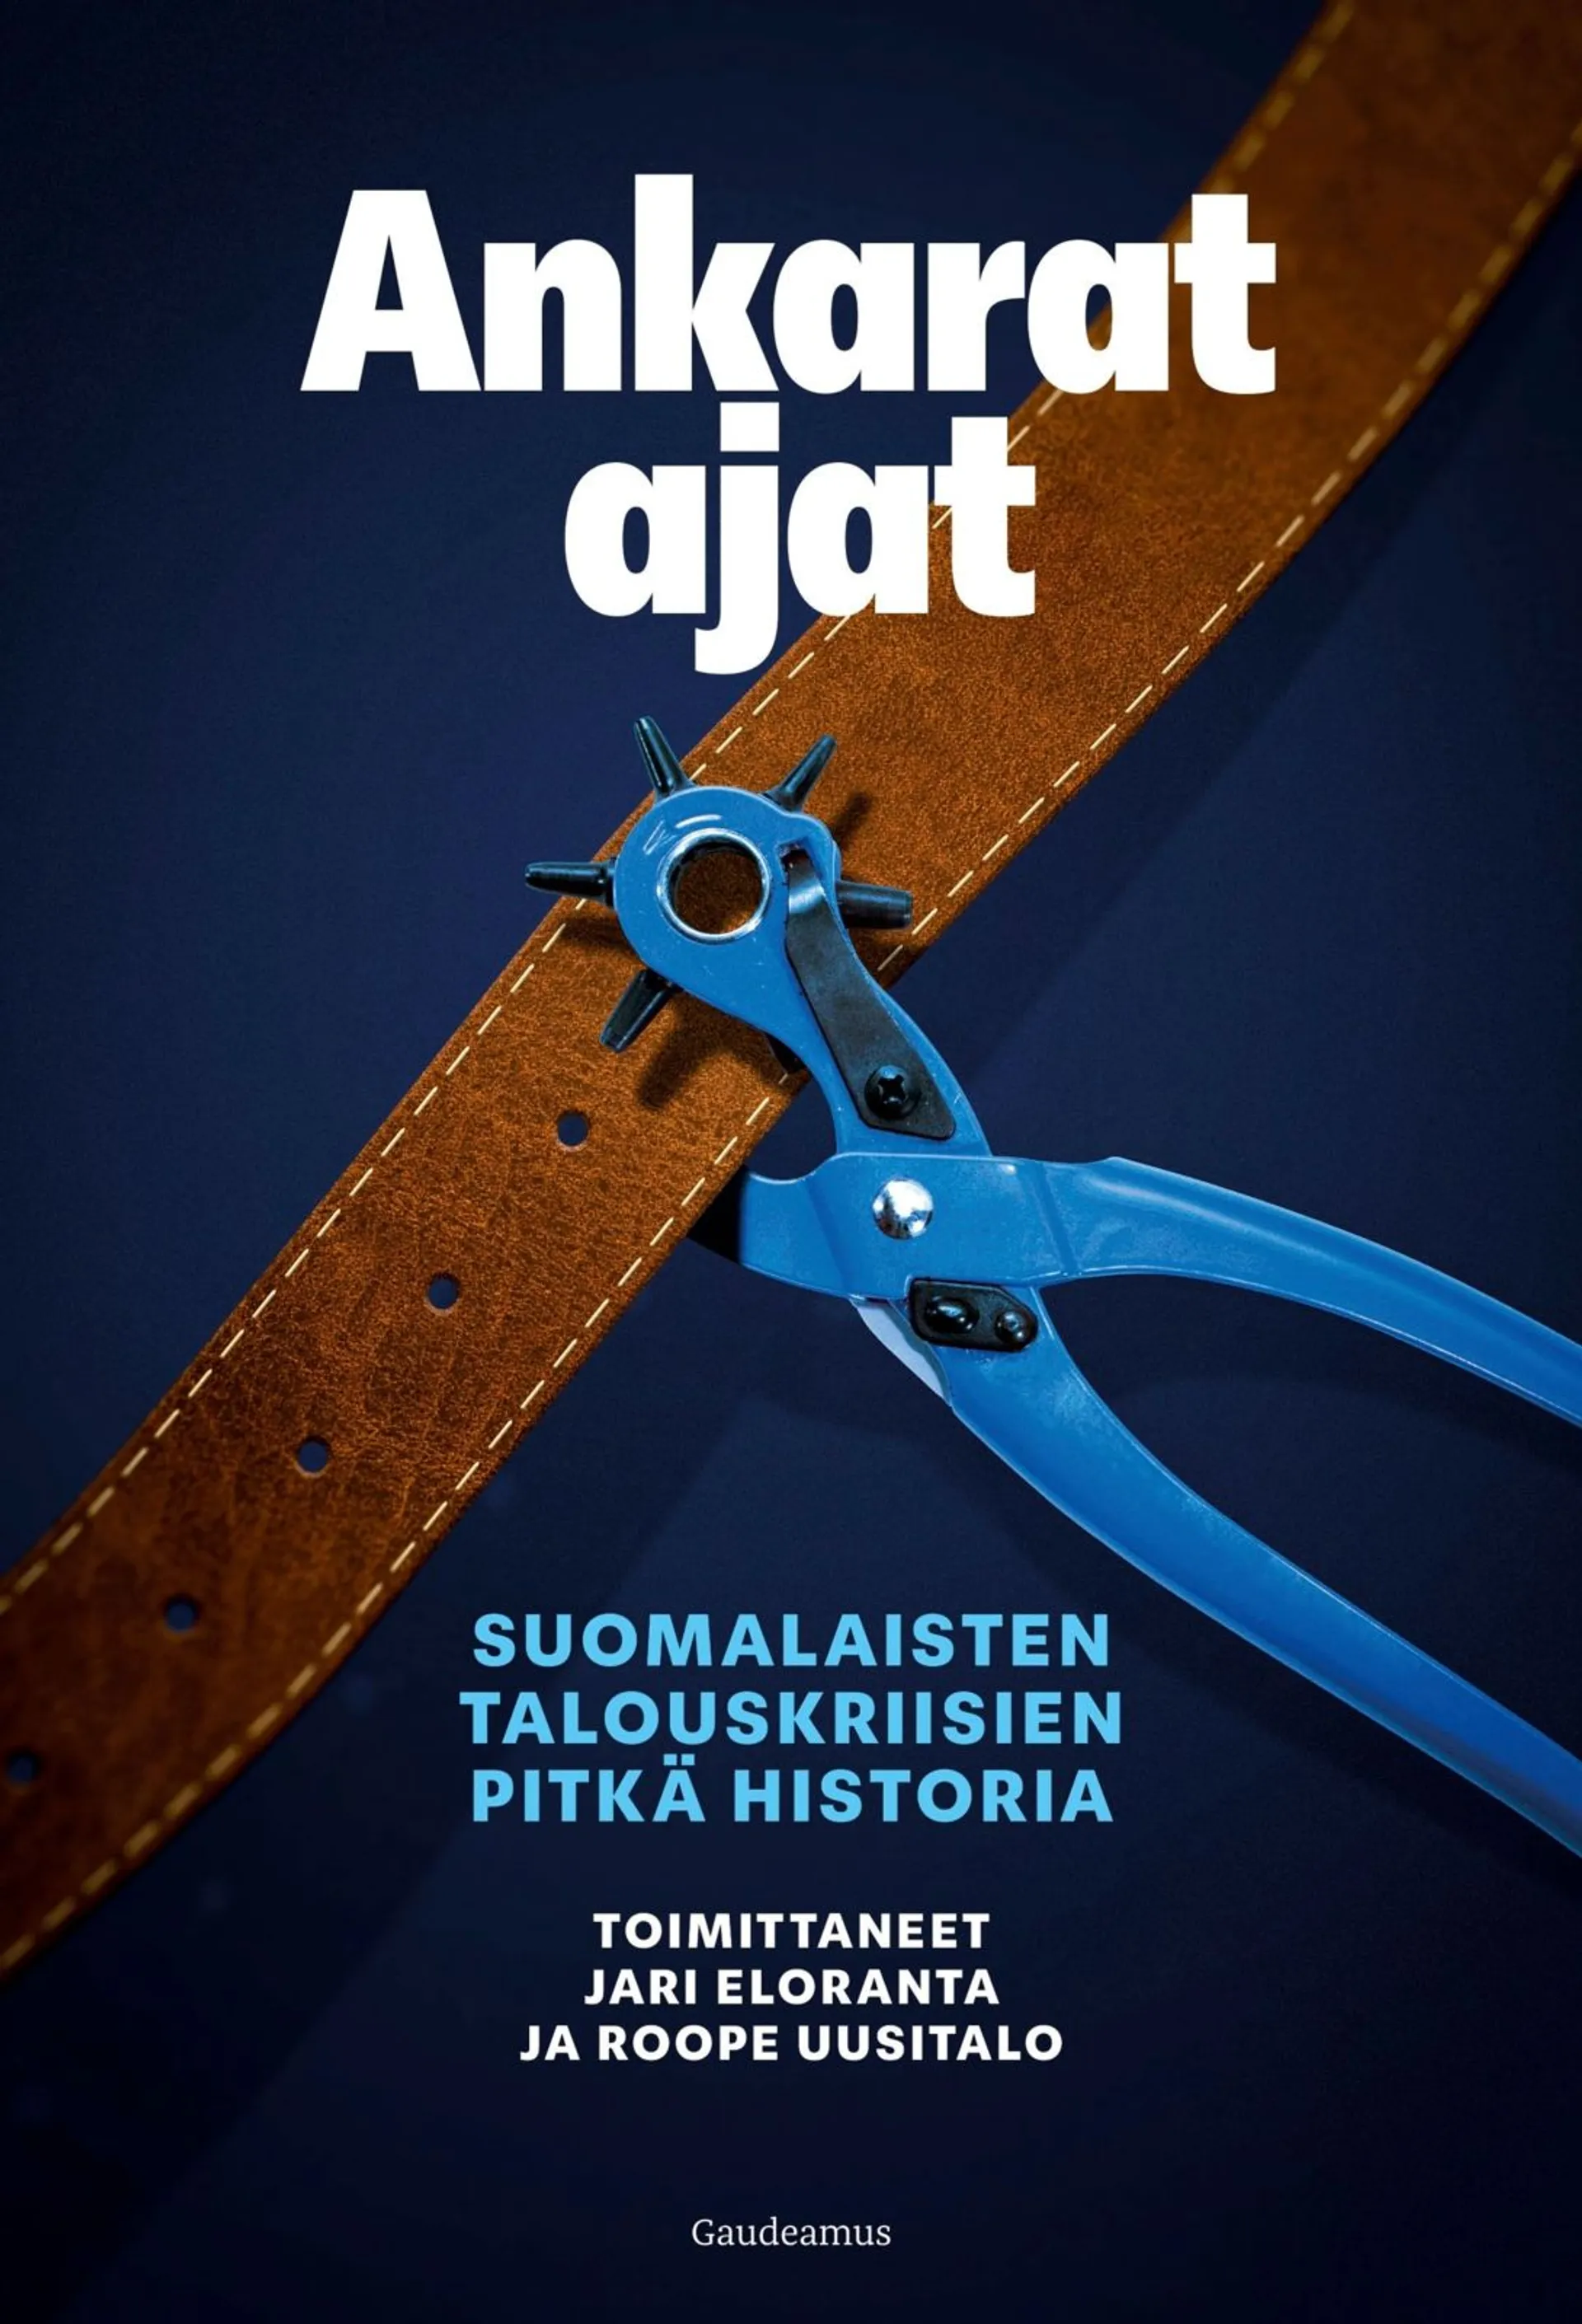 Ankarat ajat - Suomalaisten talouskriisien pitkä historia